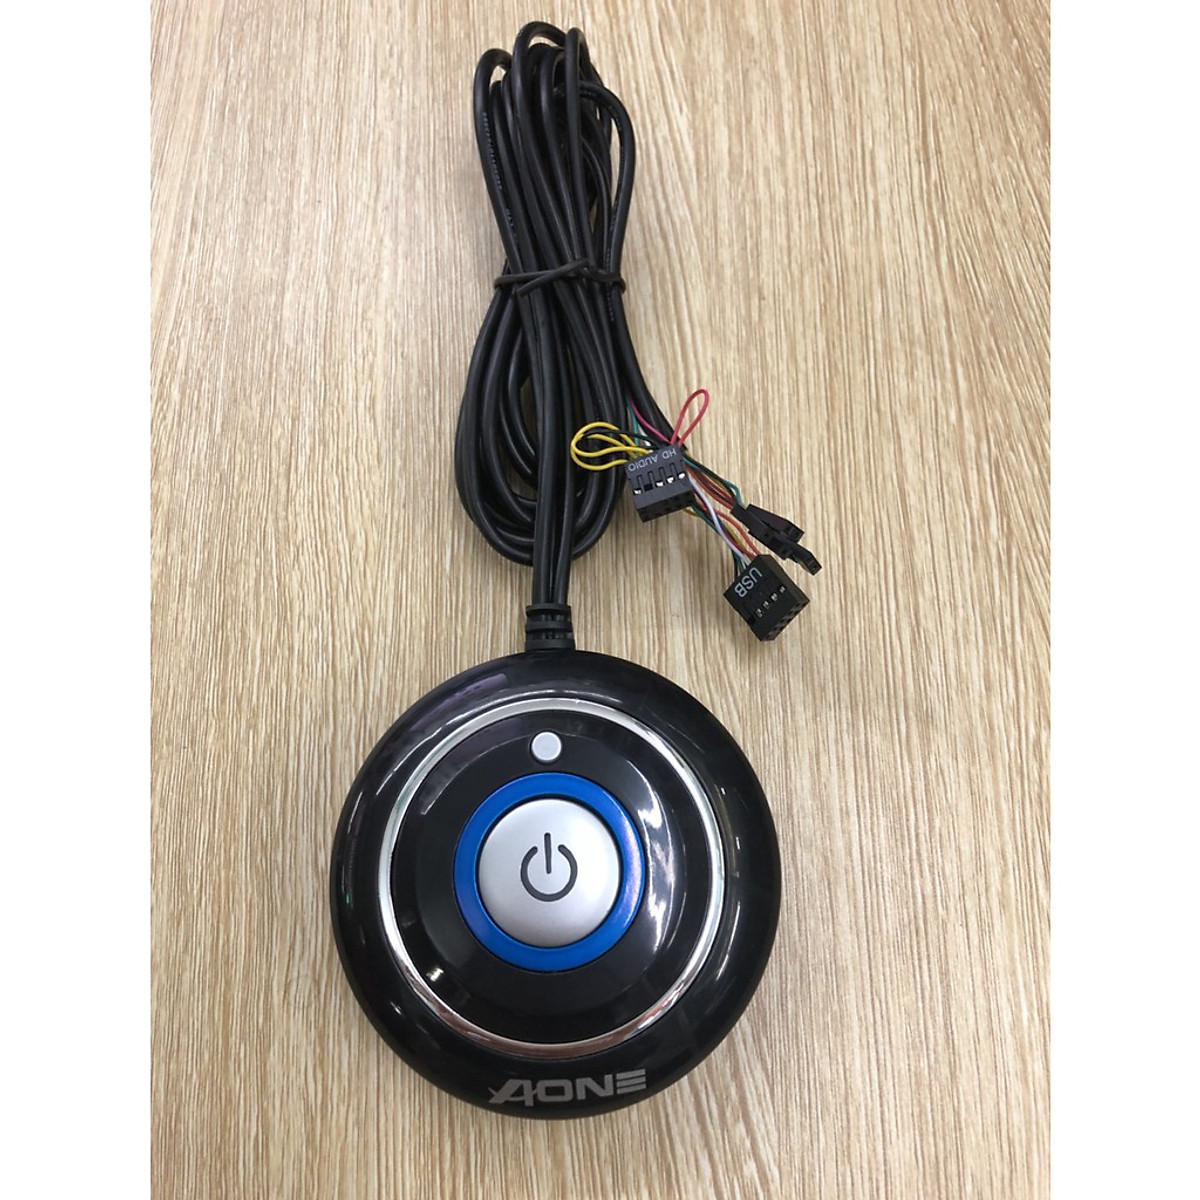 NÚT NGUỒN AONE -LED- USB-AUDIO -tròn vặn ốc